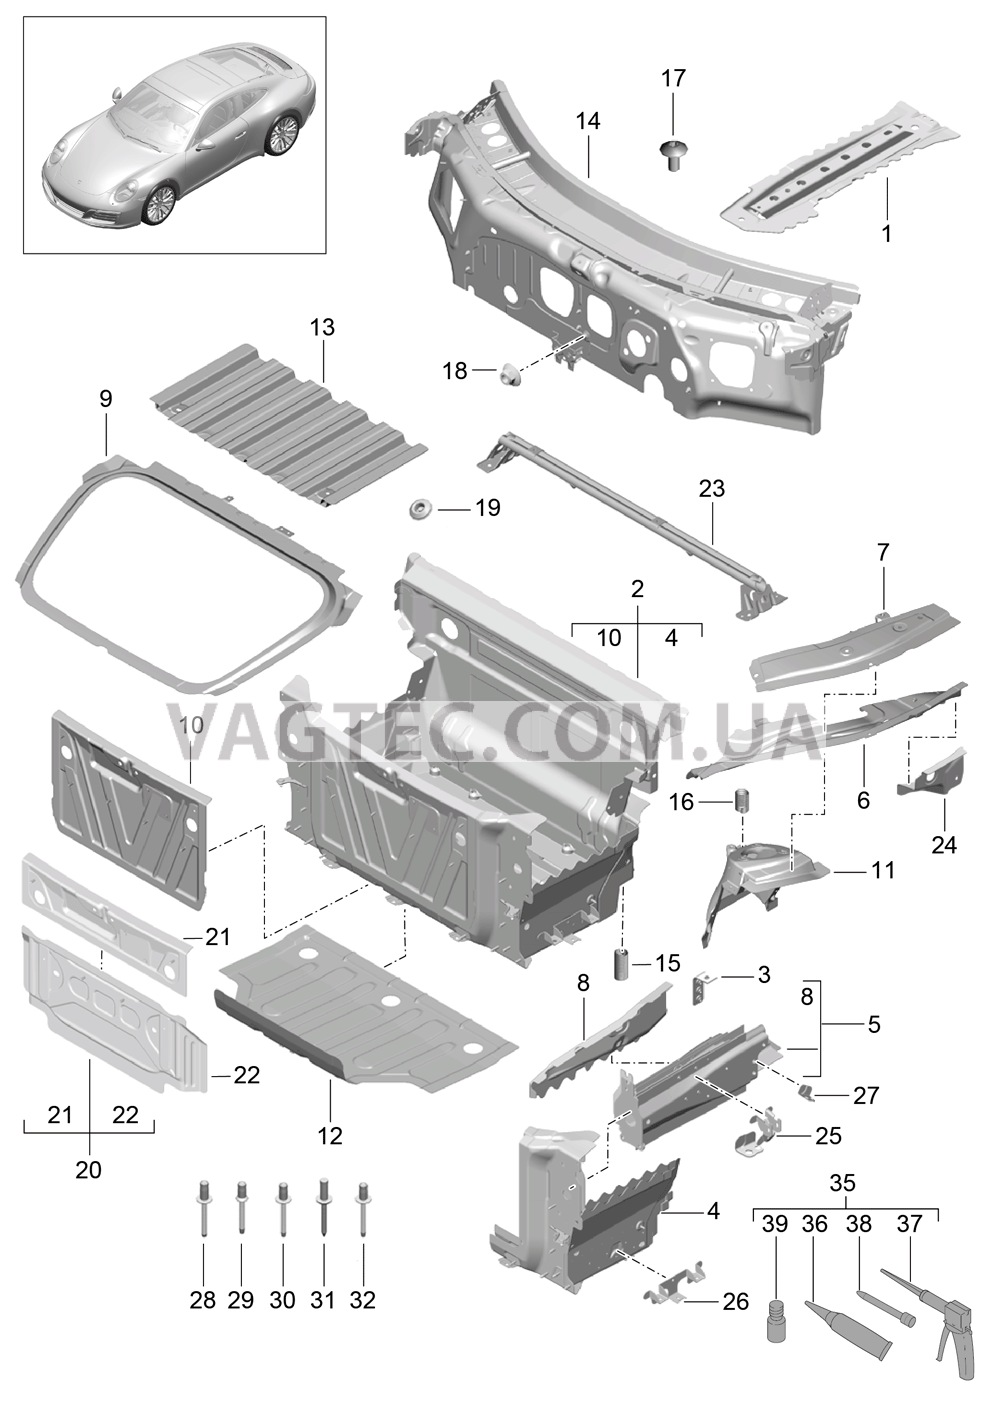 801-010 Передняя часть кузова, Отдельные детали для PORSCHE 911.Carrera 2017-2018